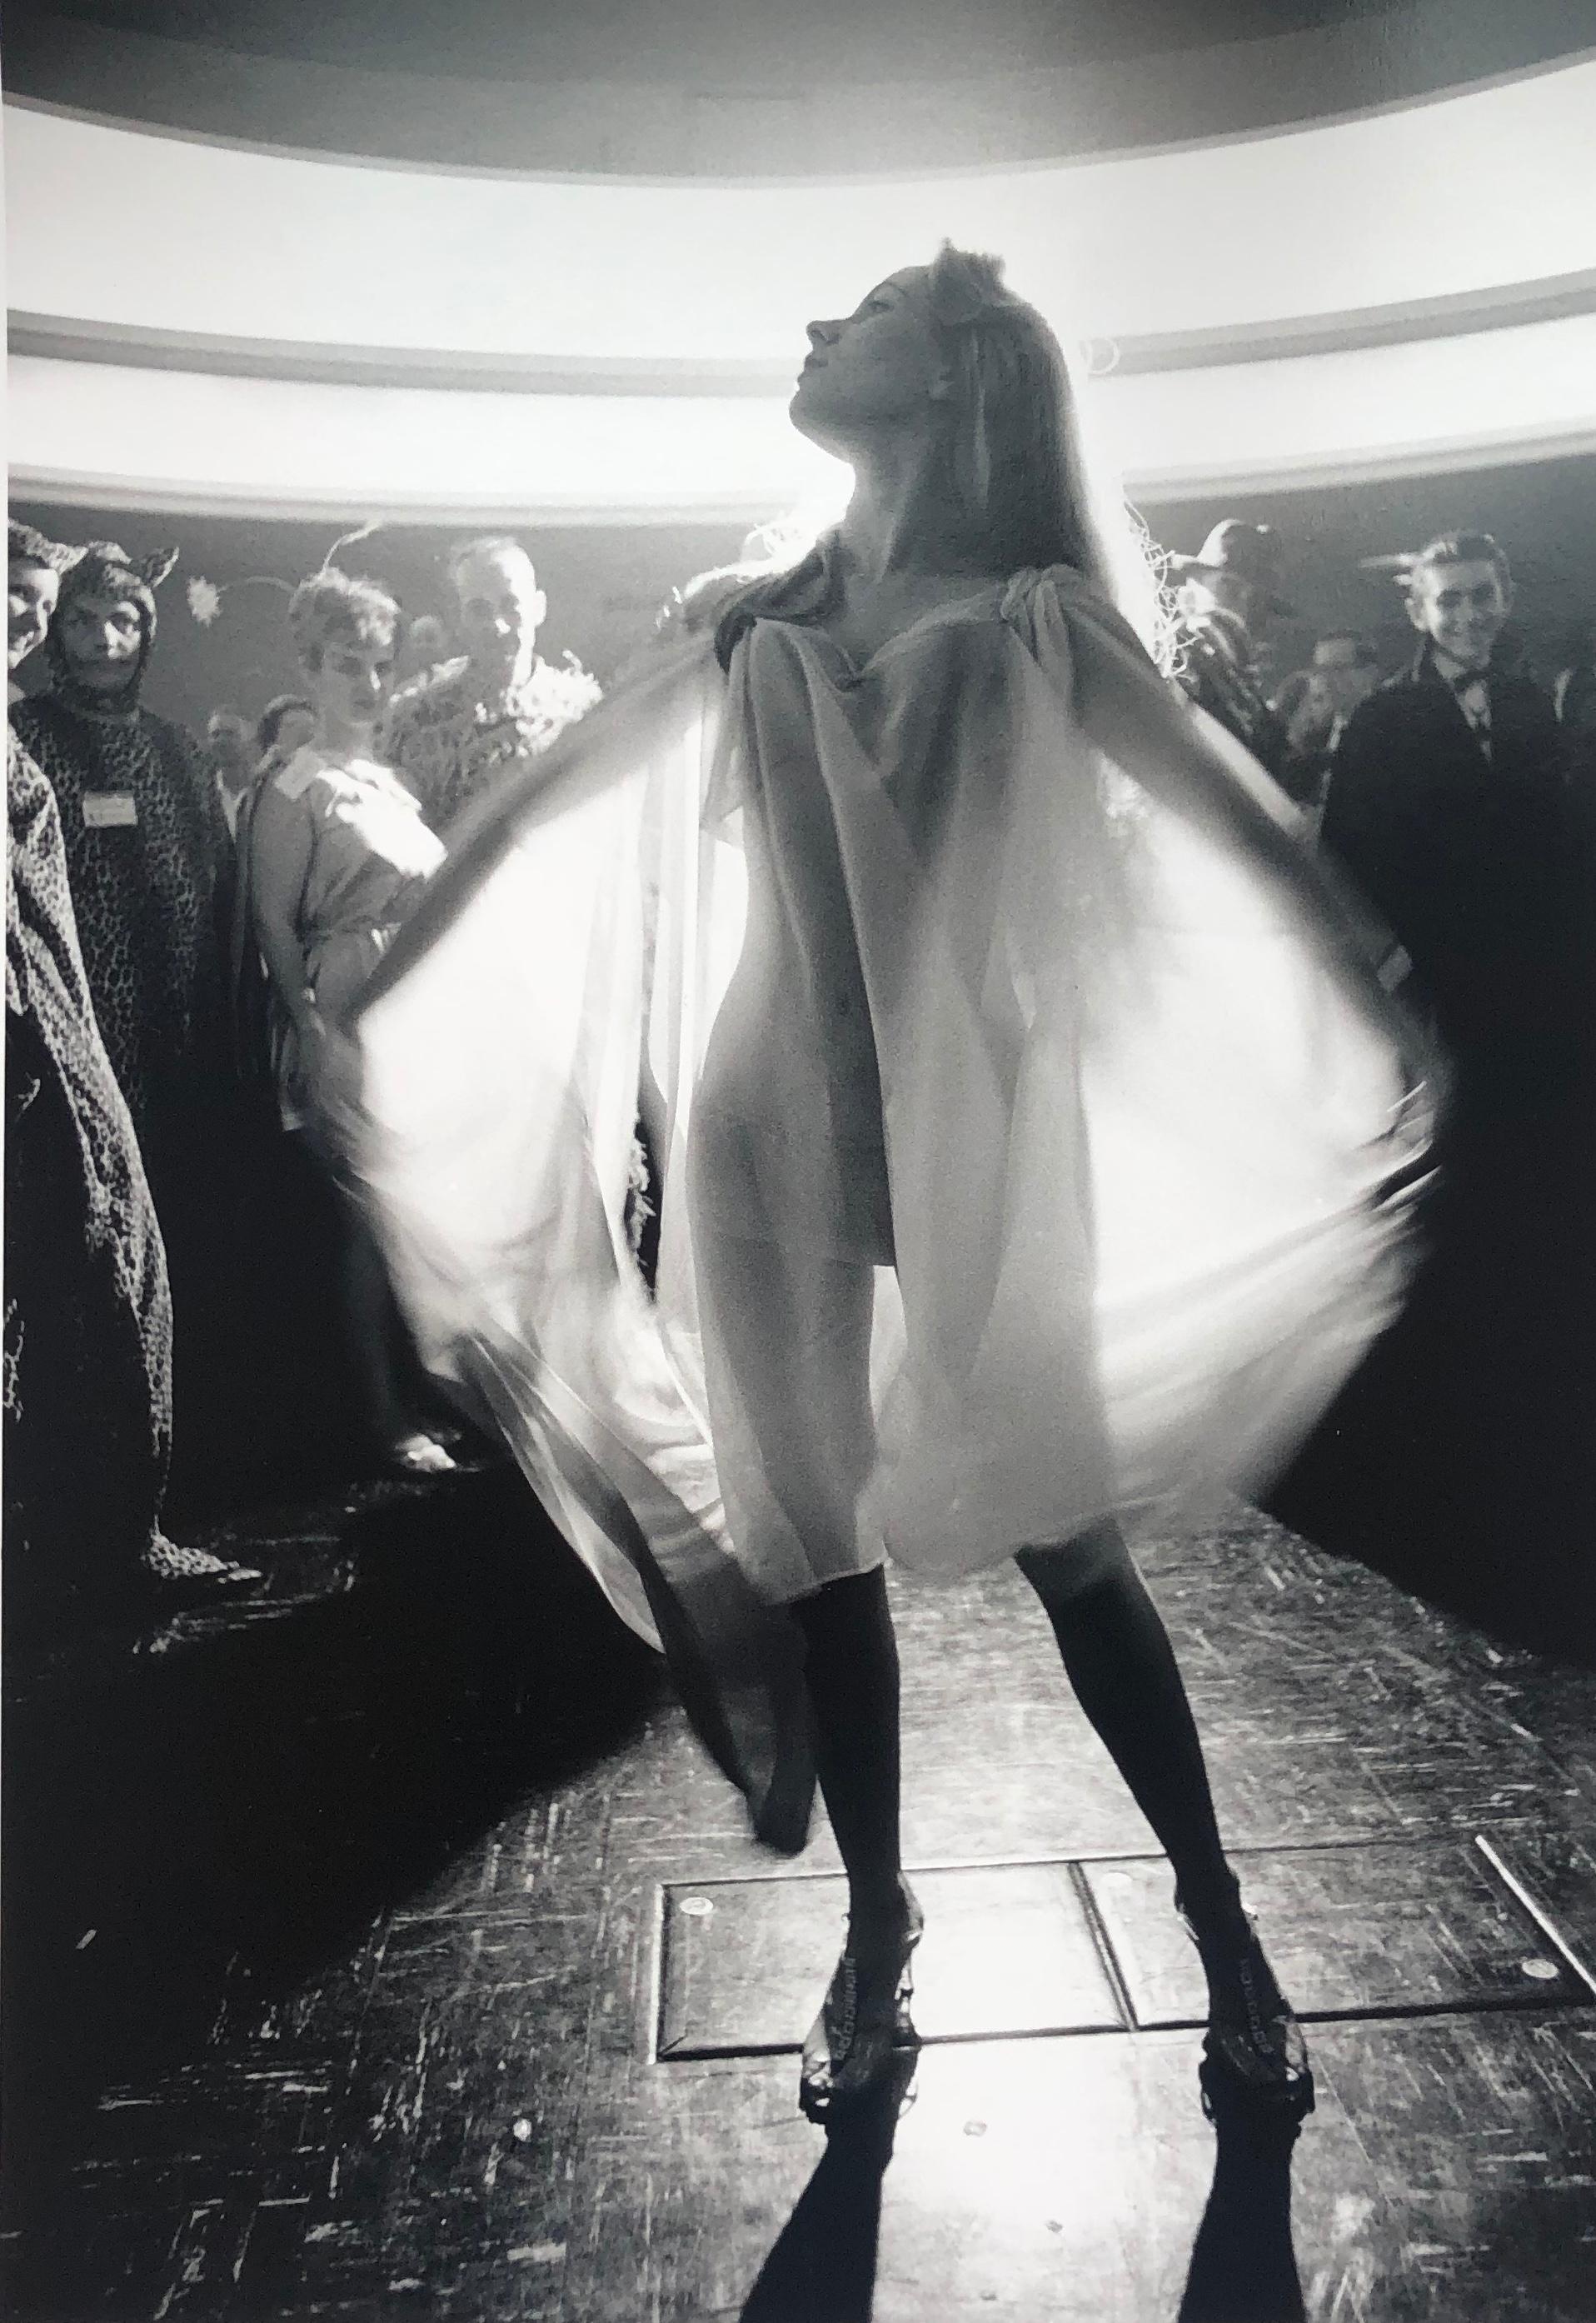 Femme en robe transparente, photographie en gélatine argentée noire et blanche par Art Shay